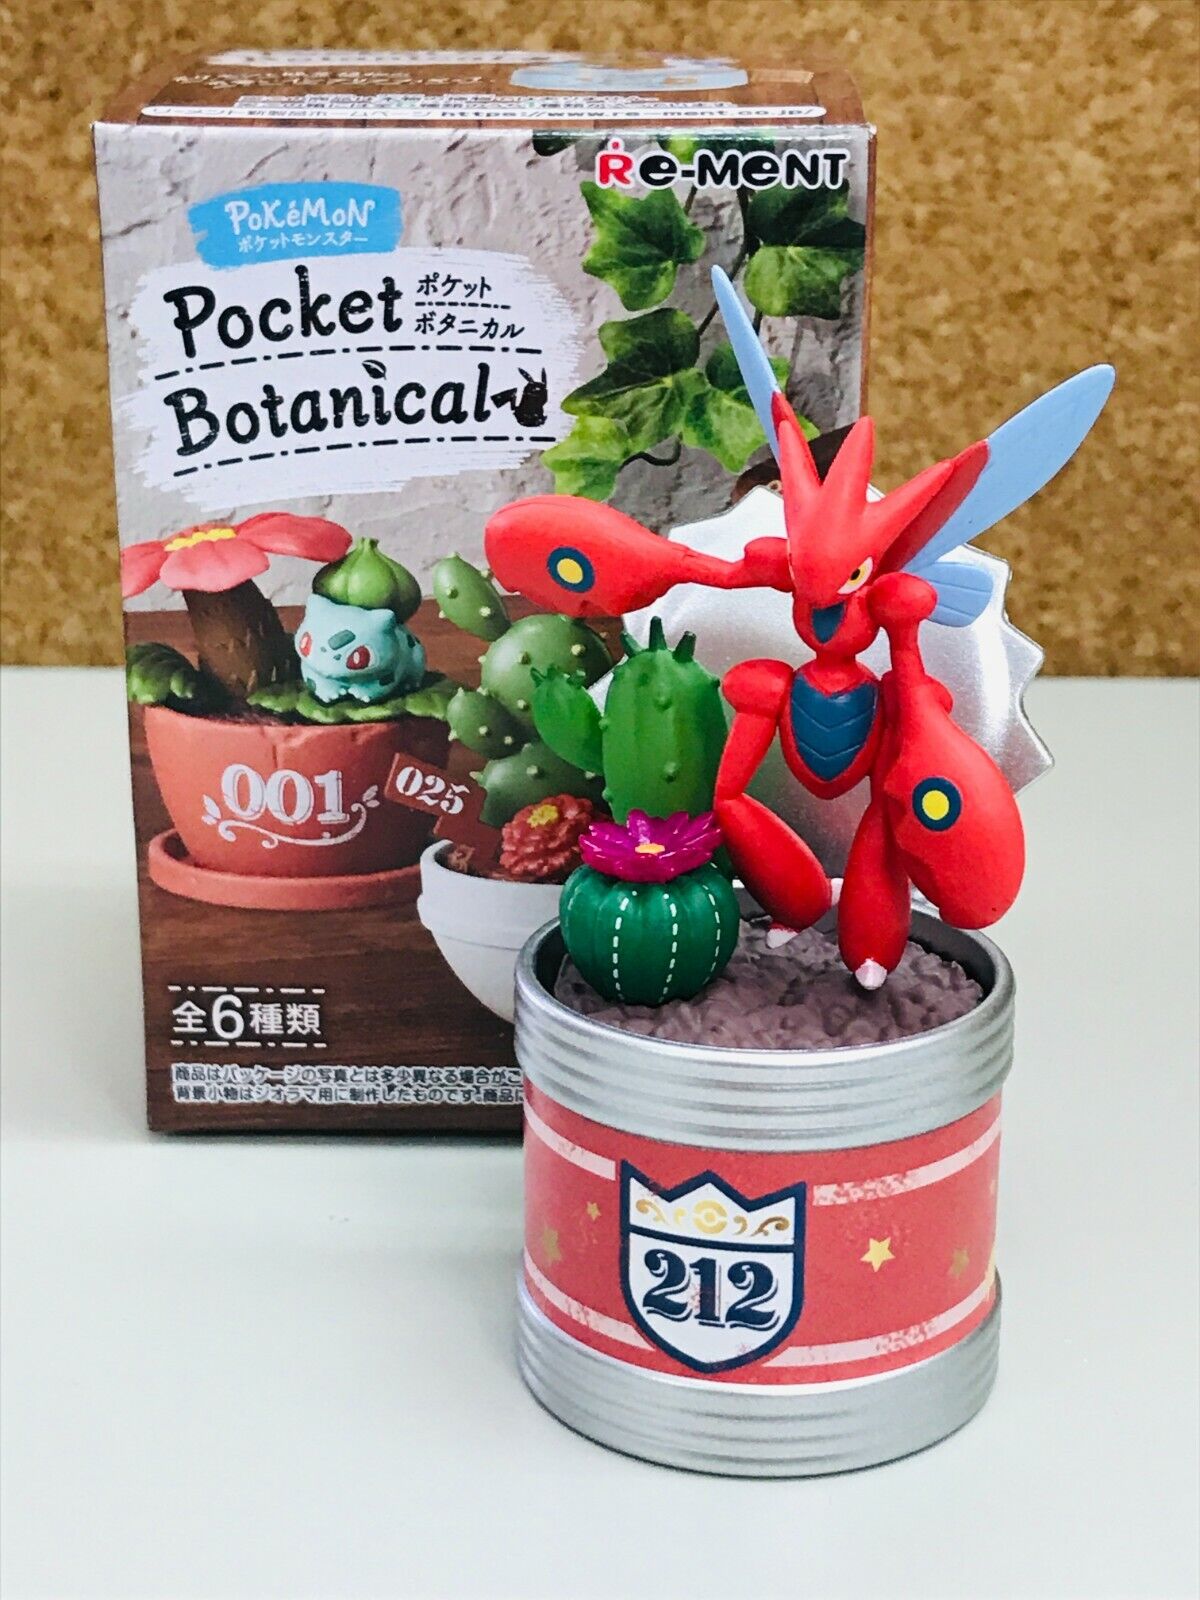 Re-Ment Pokemon Pocket Botanical Miniature Toy Figure [#4 Scizor ] Anime Japan J